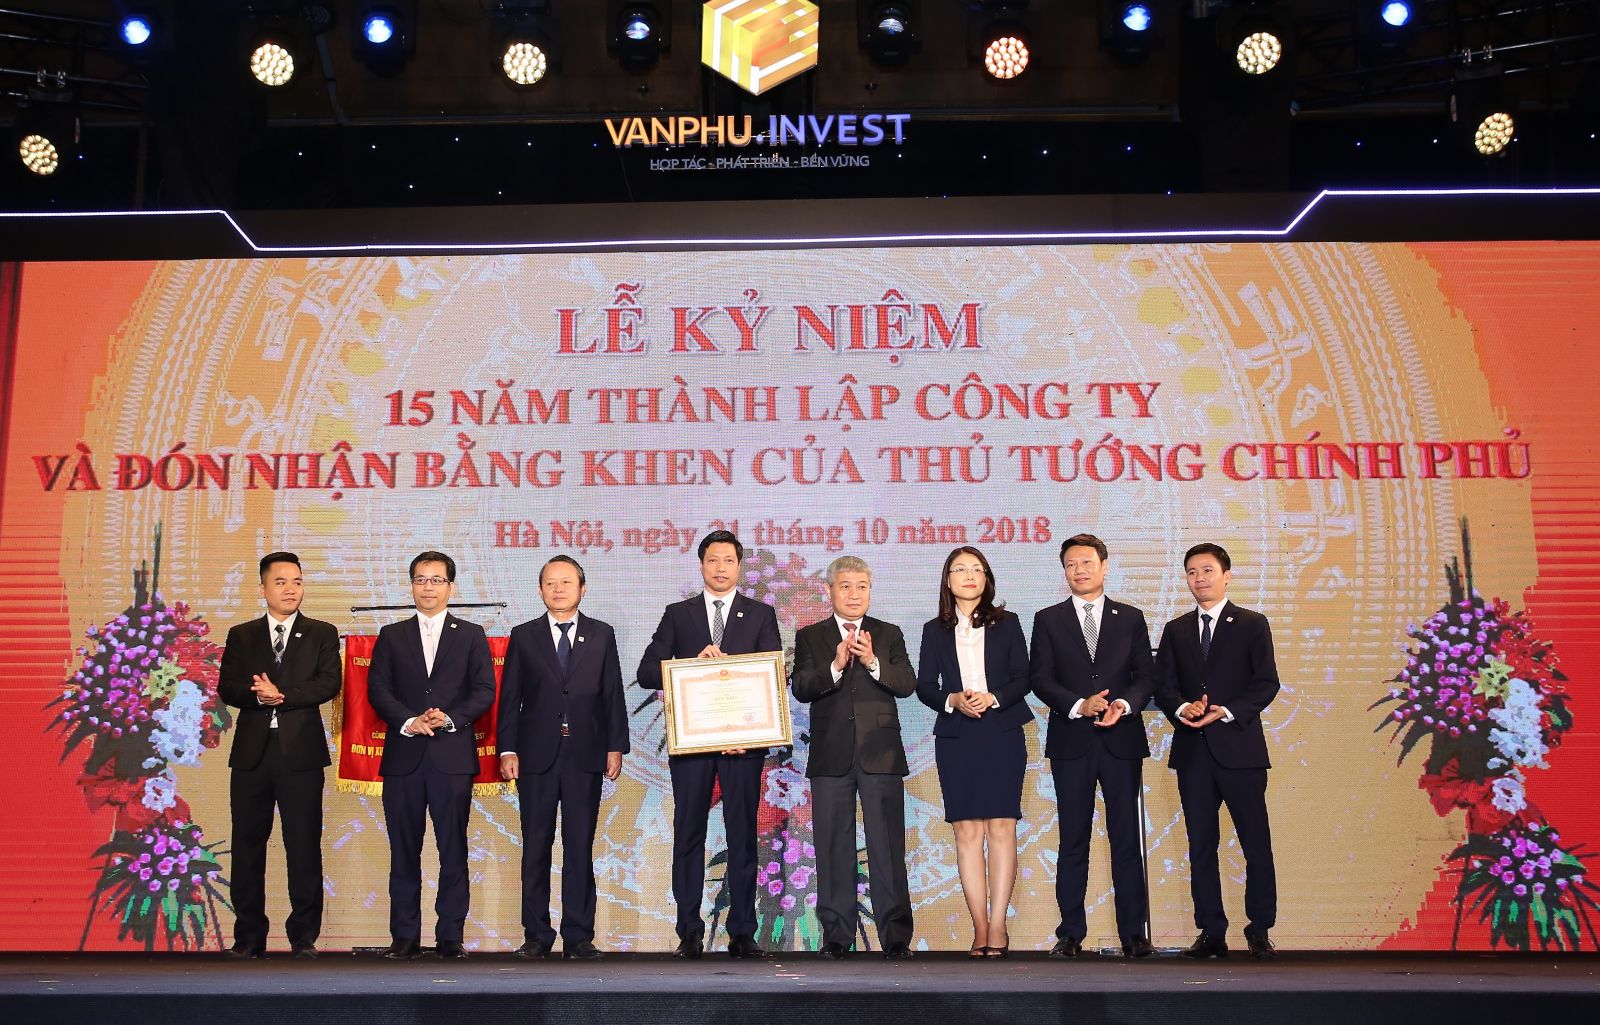 Công ty Cổ phần Đầu tư Văn Phú – Invest vinh dự đón nhận bằng khen của Thủ tướng Chính phủ cho những đóng góp to lớn của mình.